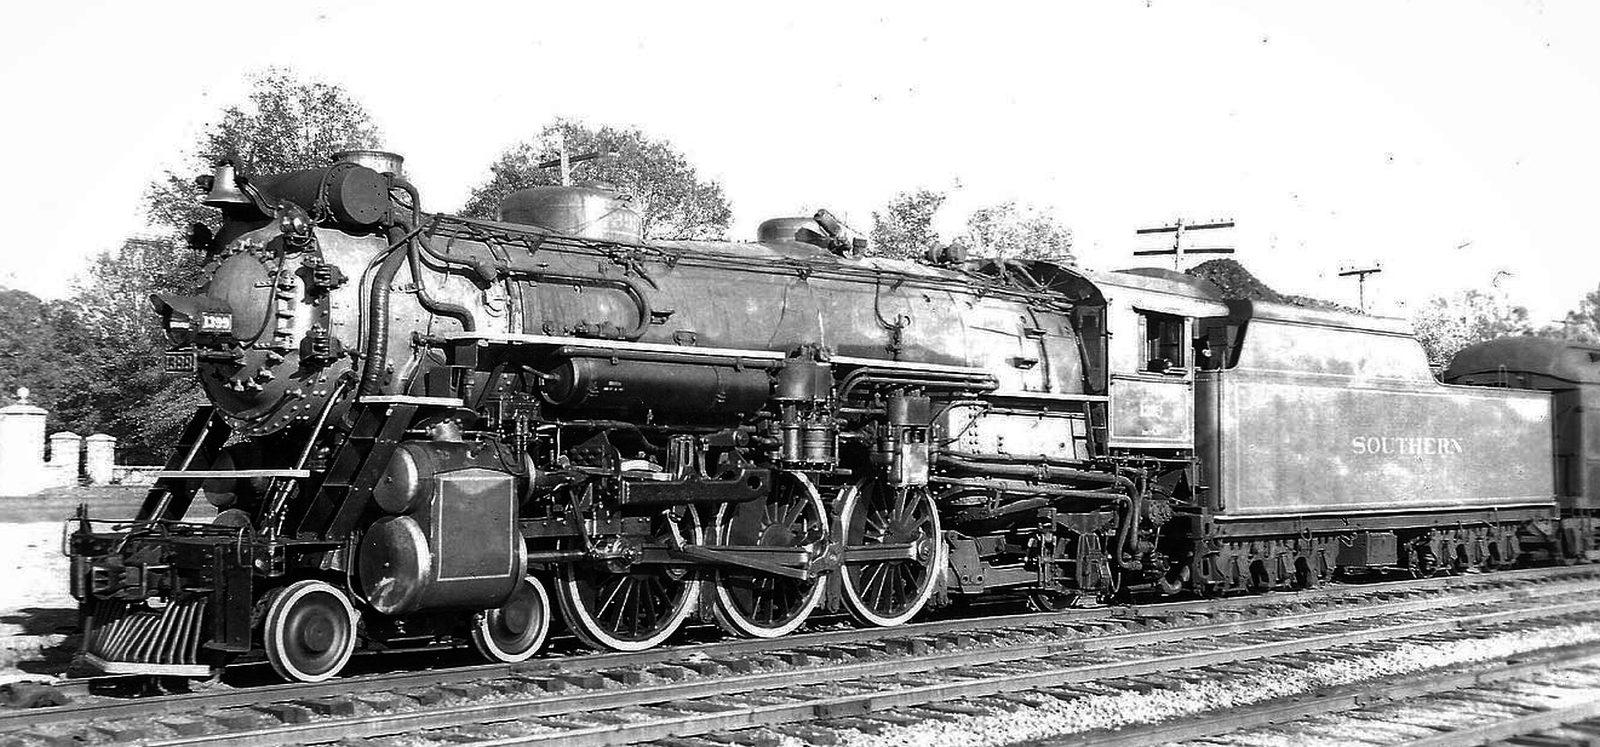 No. 1399 in June 1940 in Durham, North Carolina